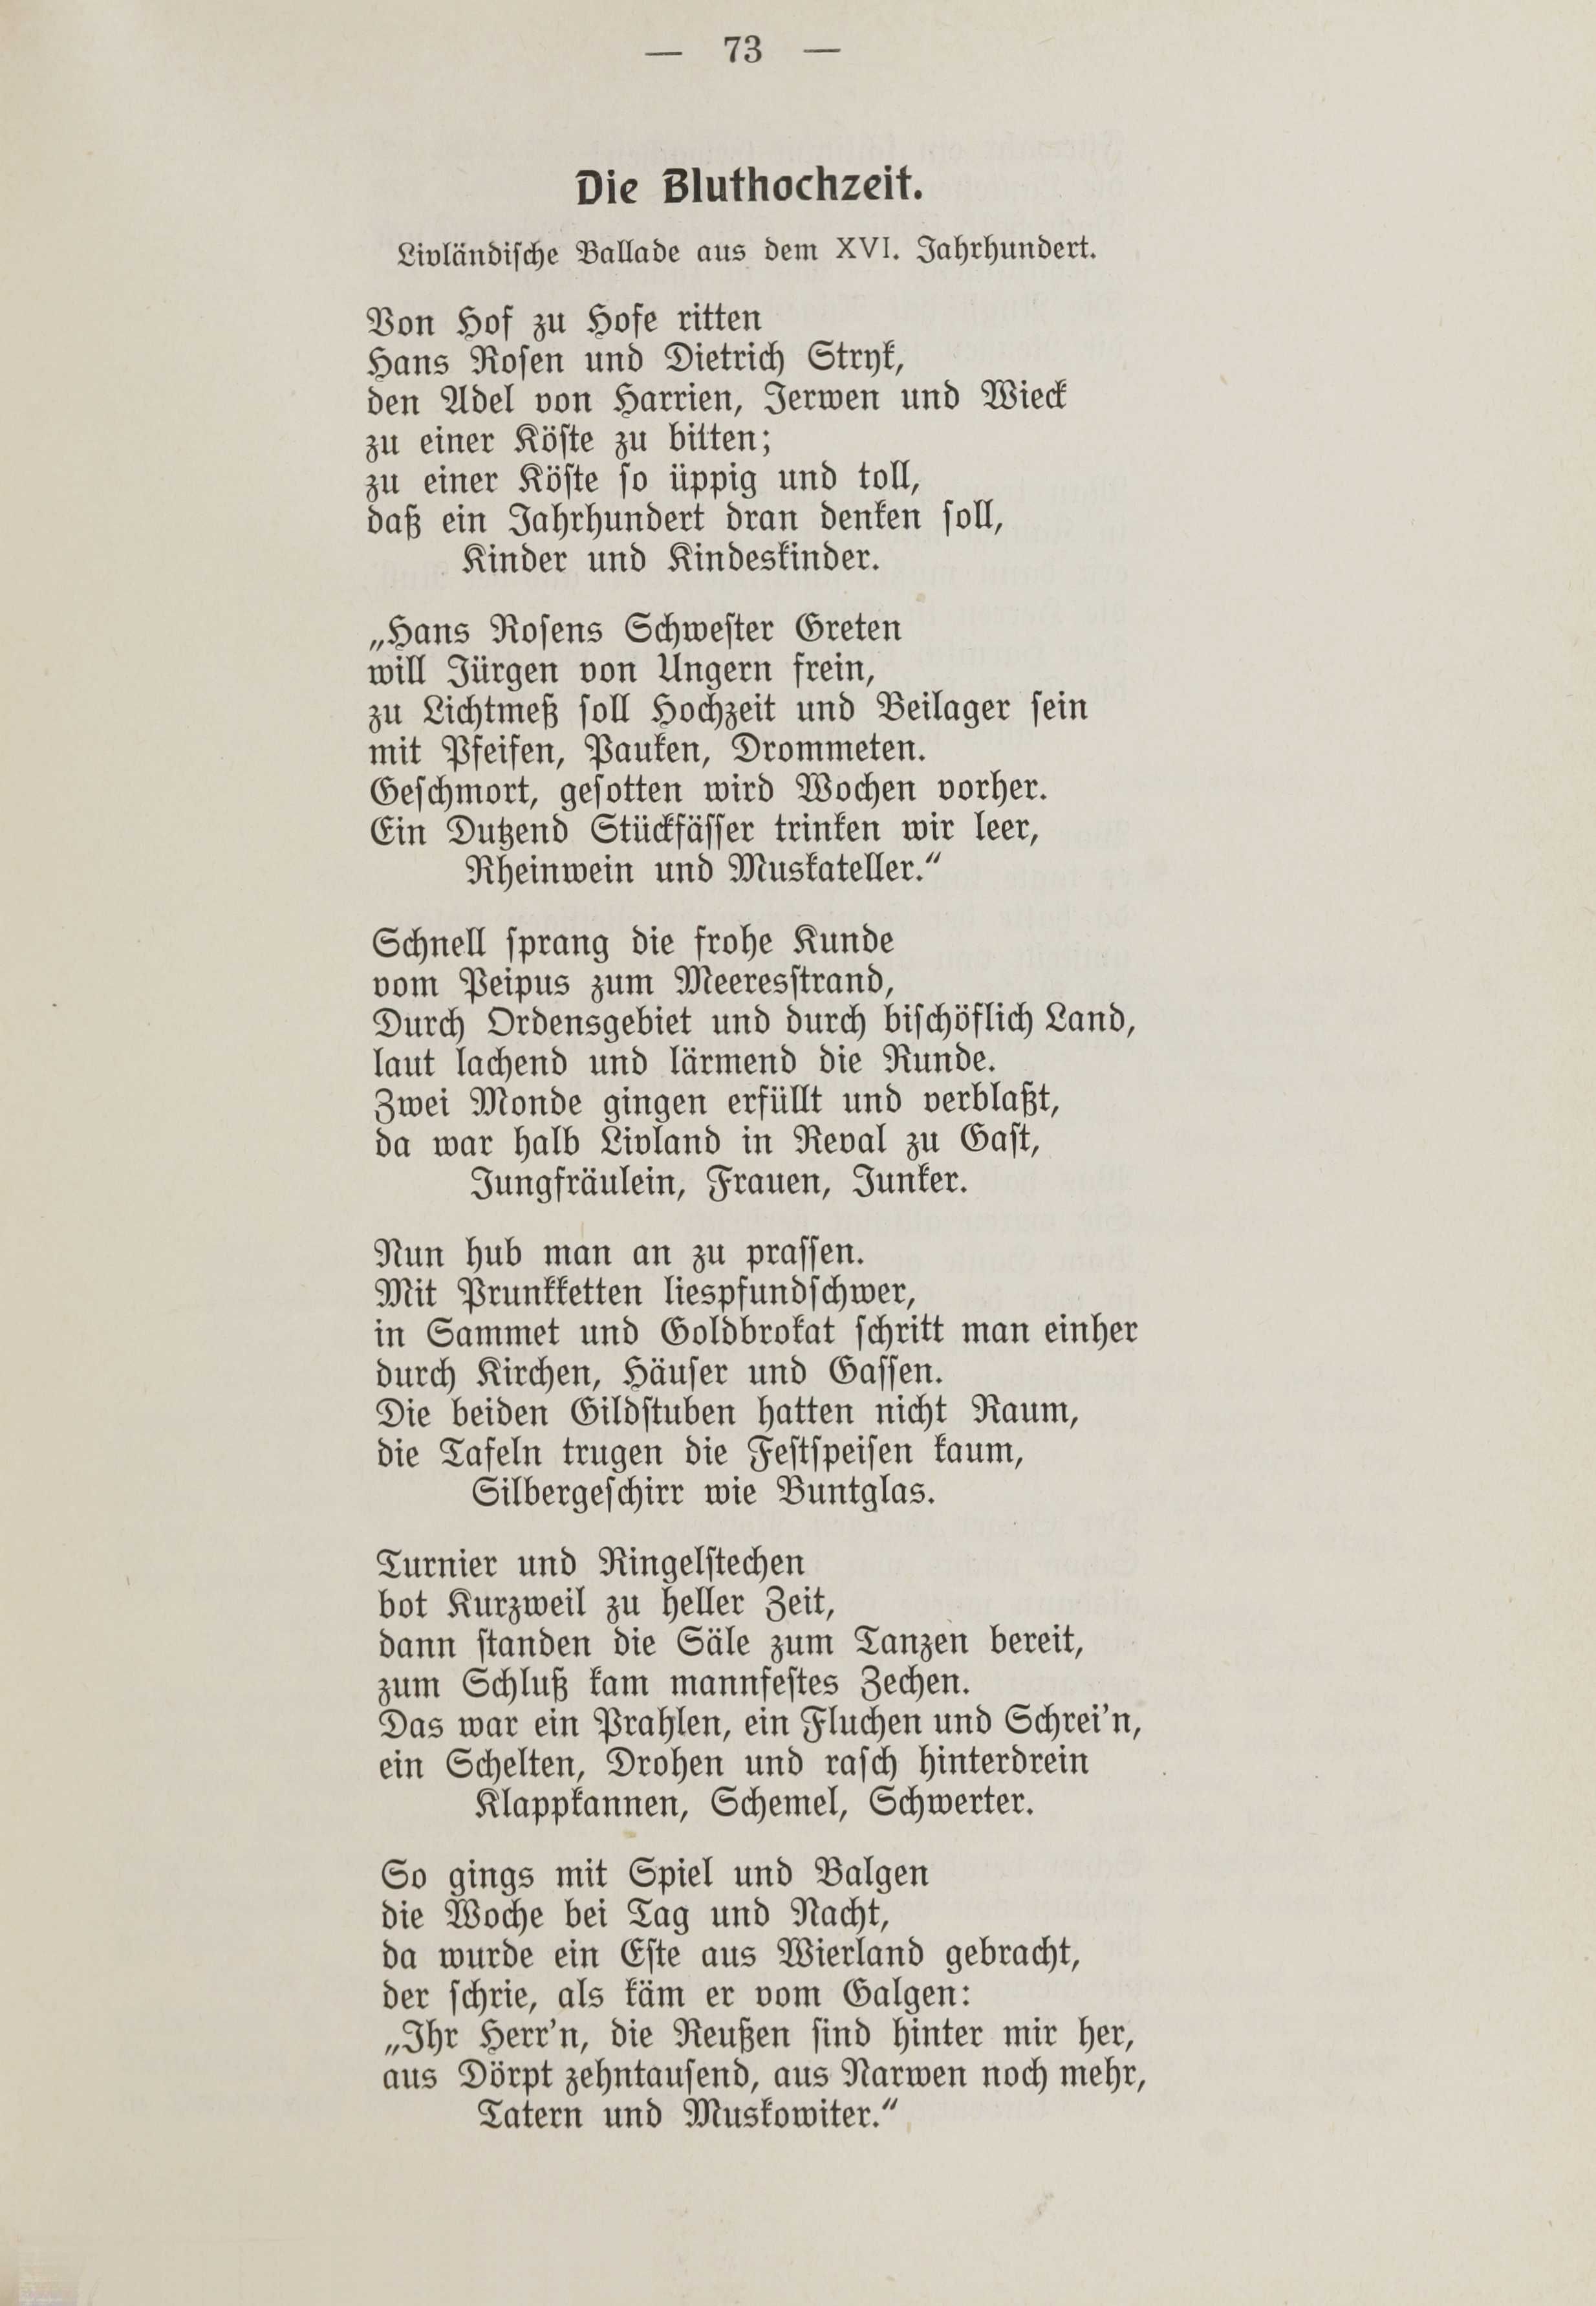 Deutsche Monatsschrift für Russland [1] (1912) | 80. (73) Haupttext